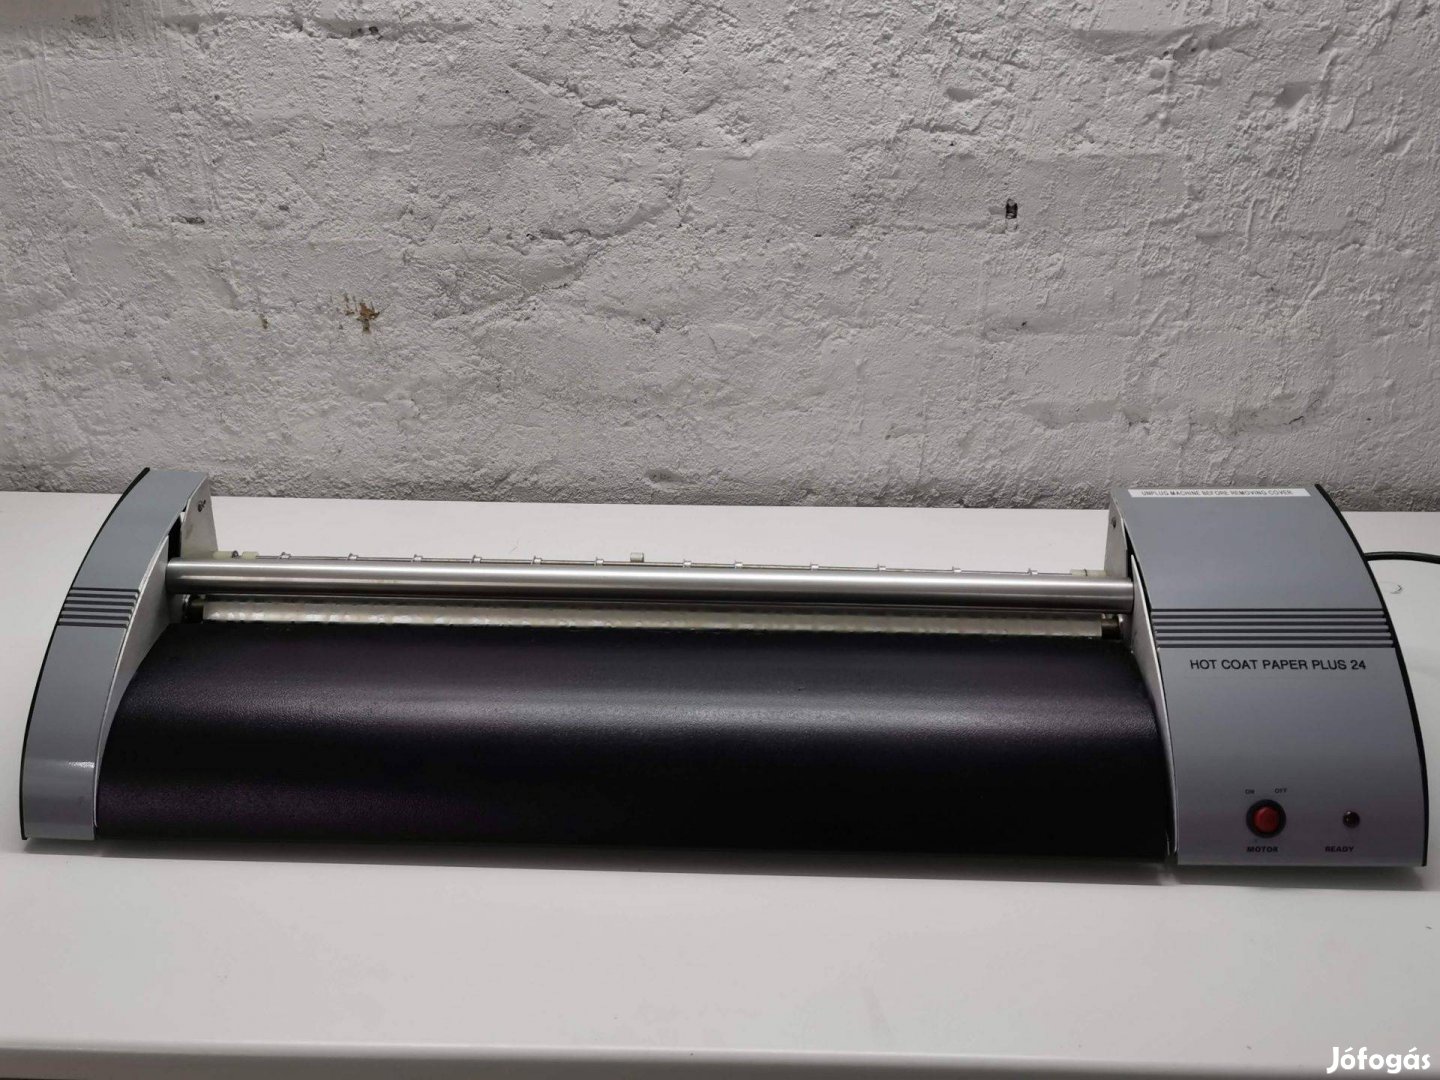 Hot Coat Paper Plus 24 melegragasztózó gép